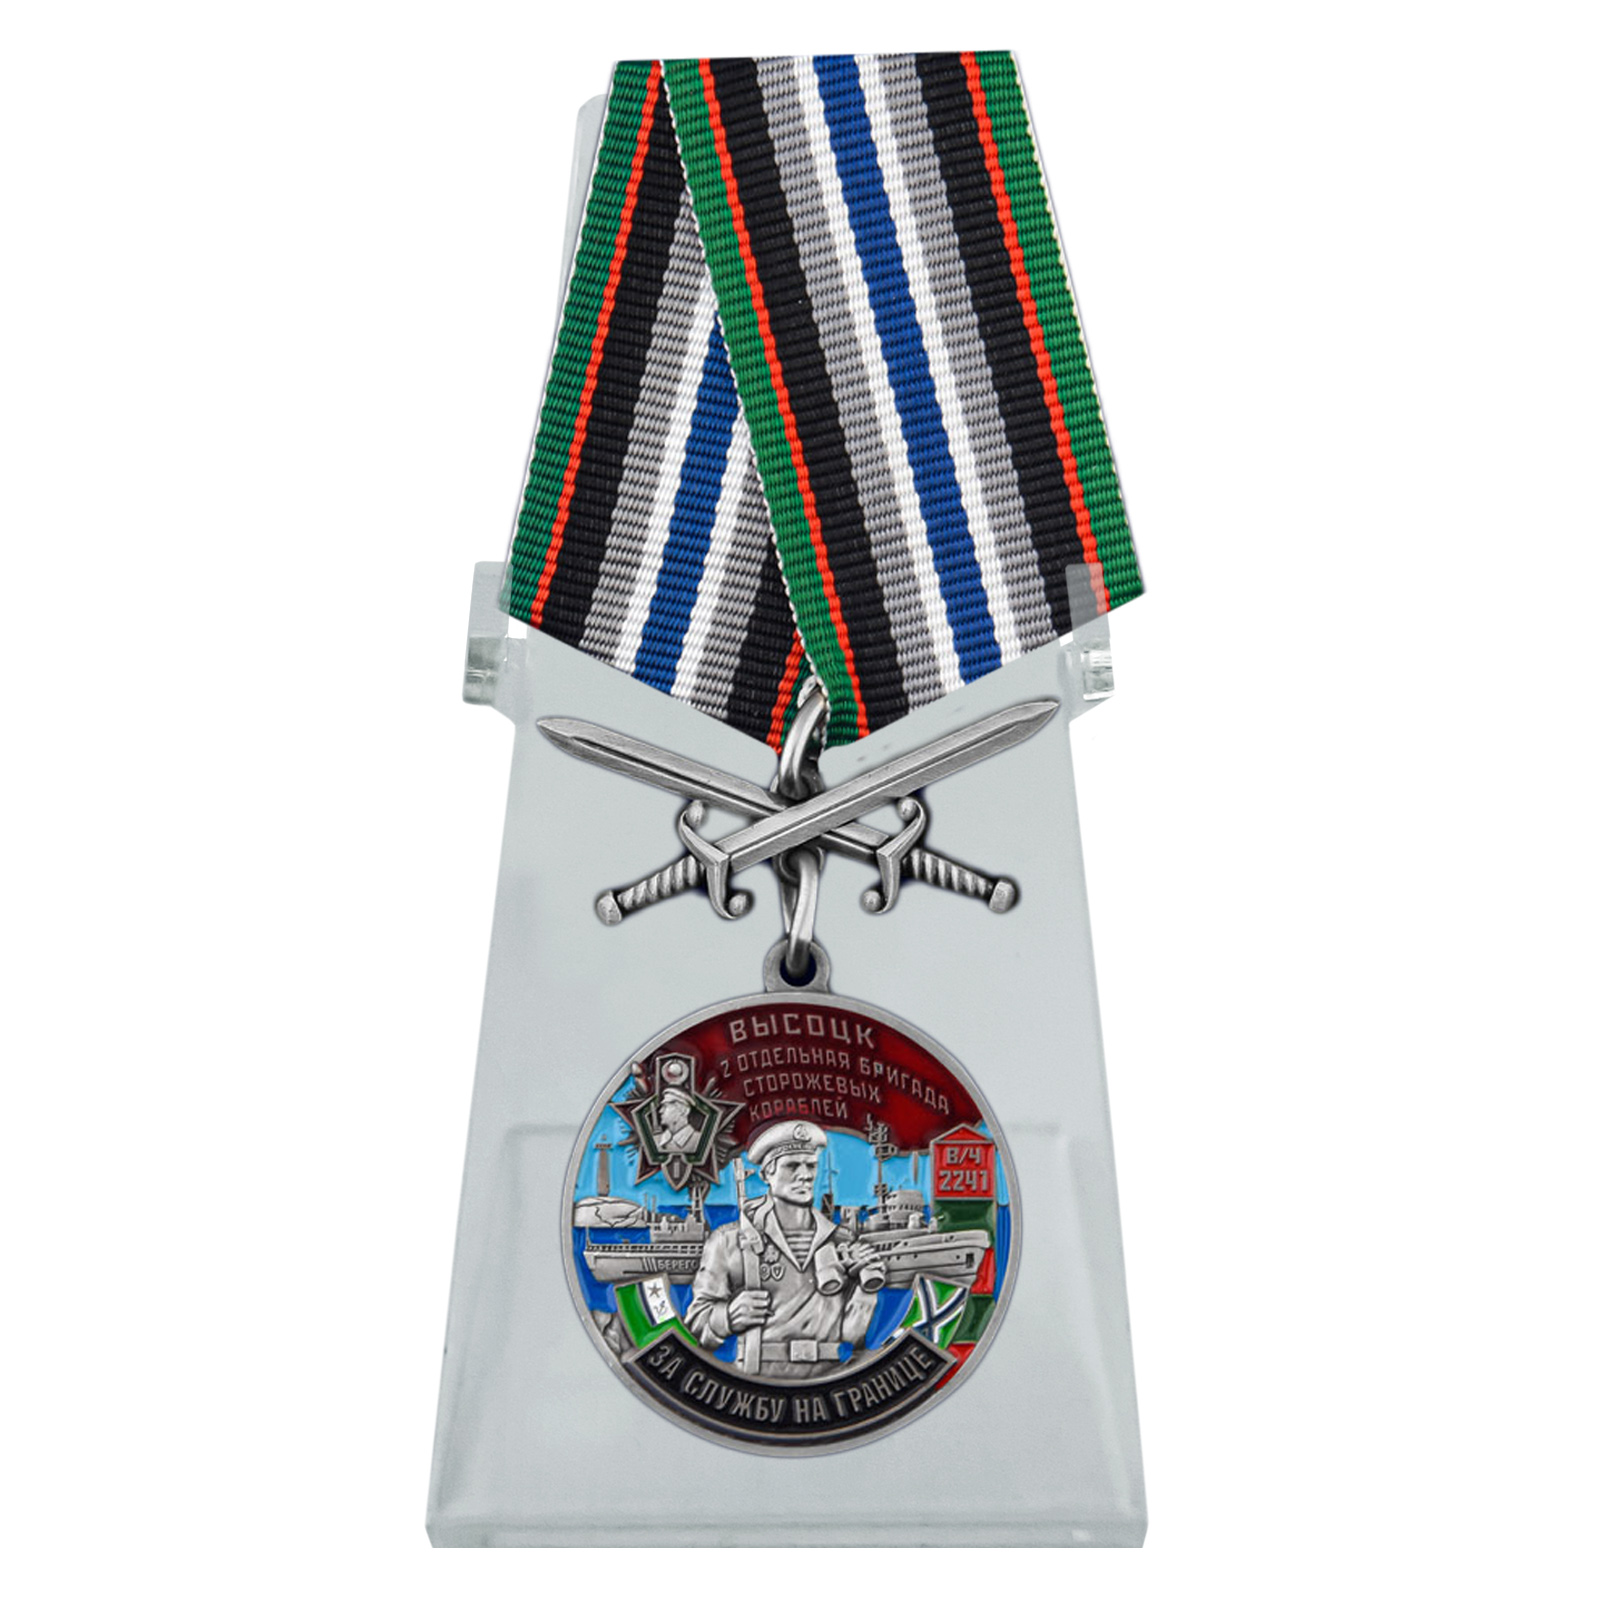 Купить медаль За службу во 2-ой бригаде сторожевых кораблей на подставке выгодно